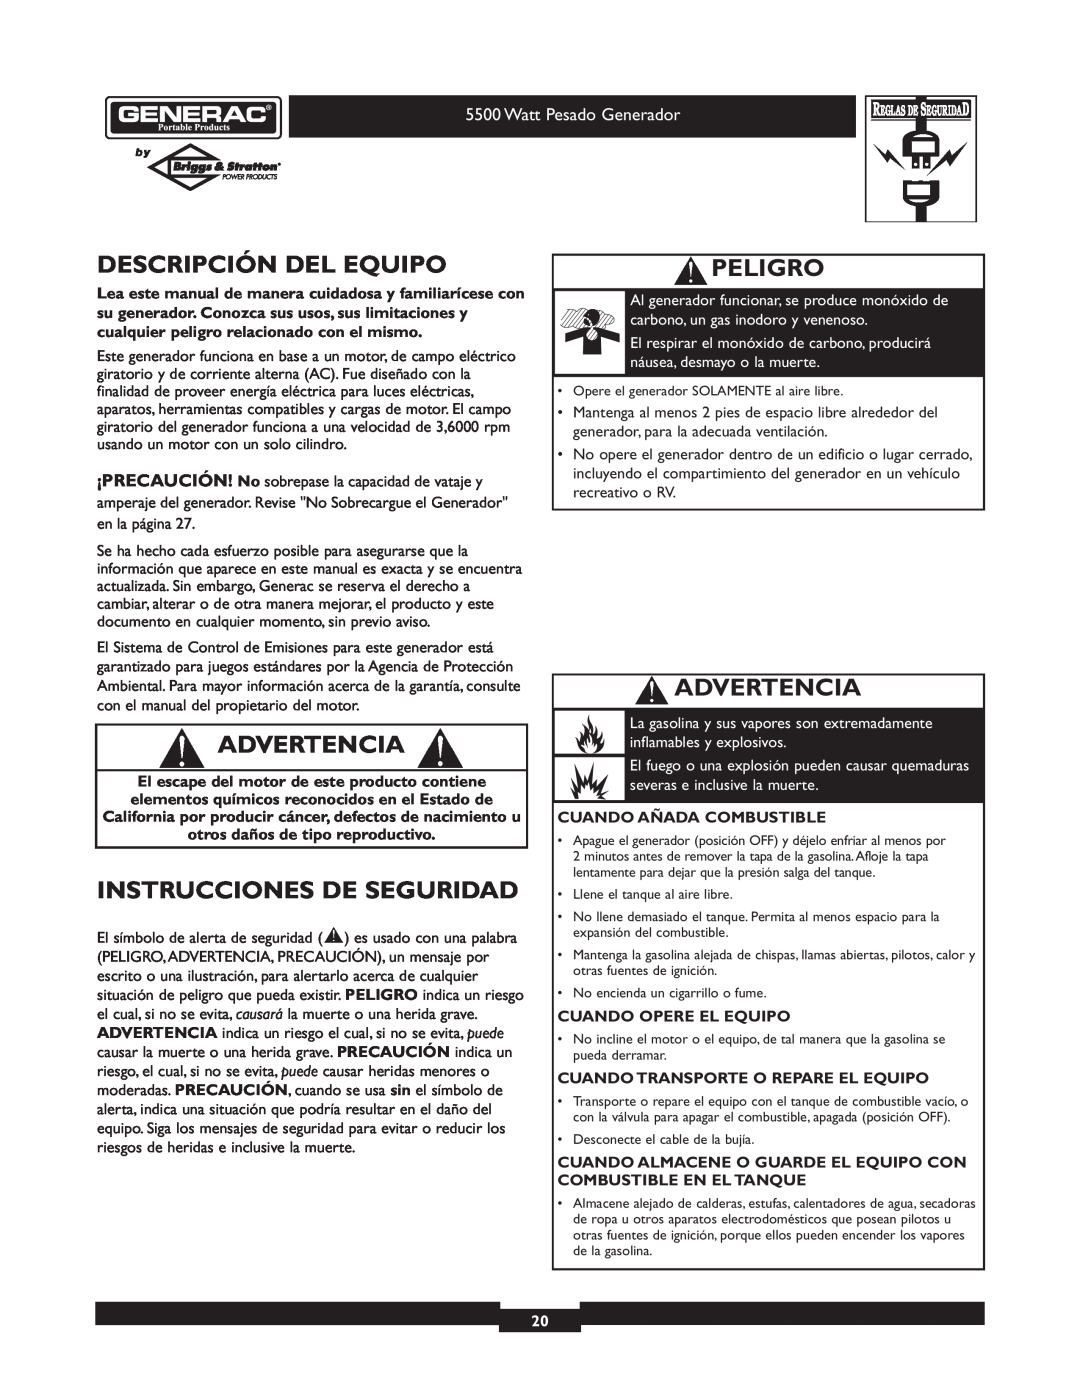 Generac 1654-0 Descripción Del Equipo, Advertencia, Instrucciones De Seguridad, Peligro, Cuando Añada Combustible 